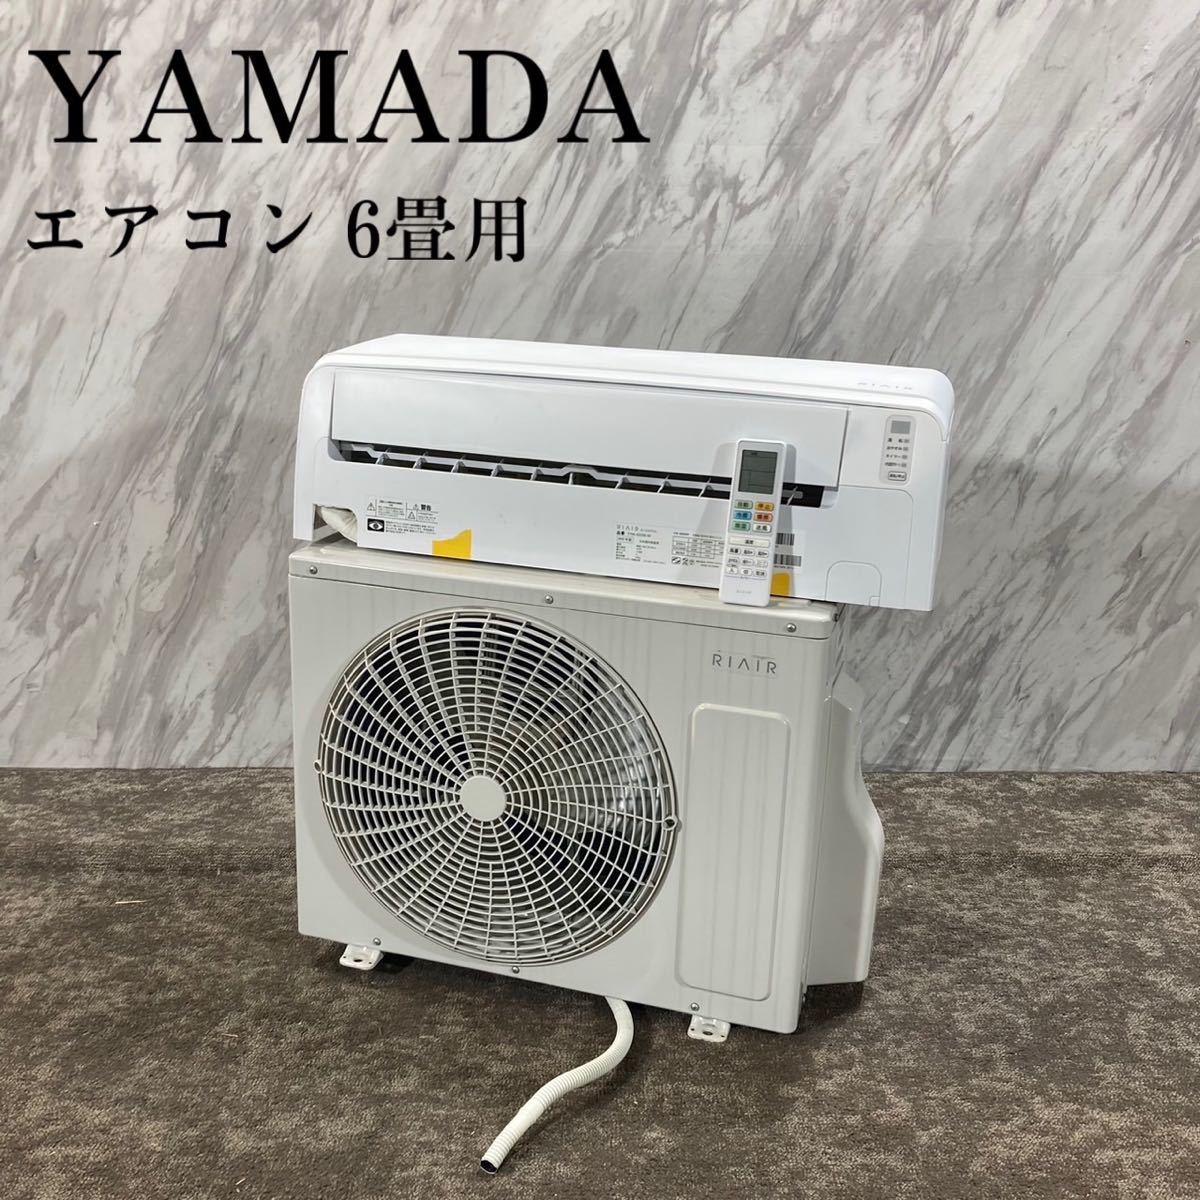 柔らかい エアコン YAMADA YHA-S22M-W K582 家電 RIAIR 6畳用 12畳未満